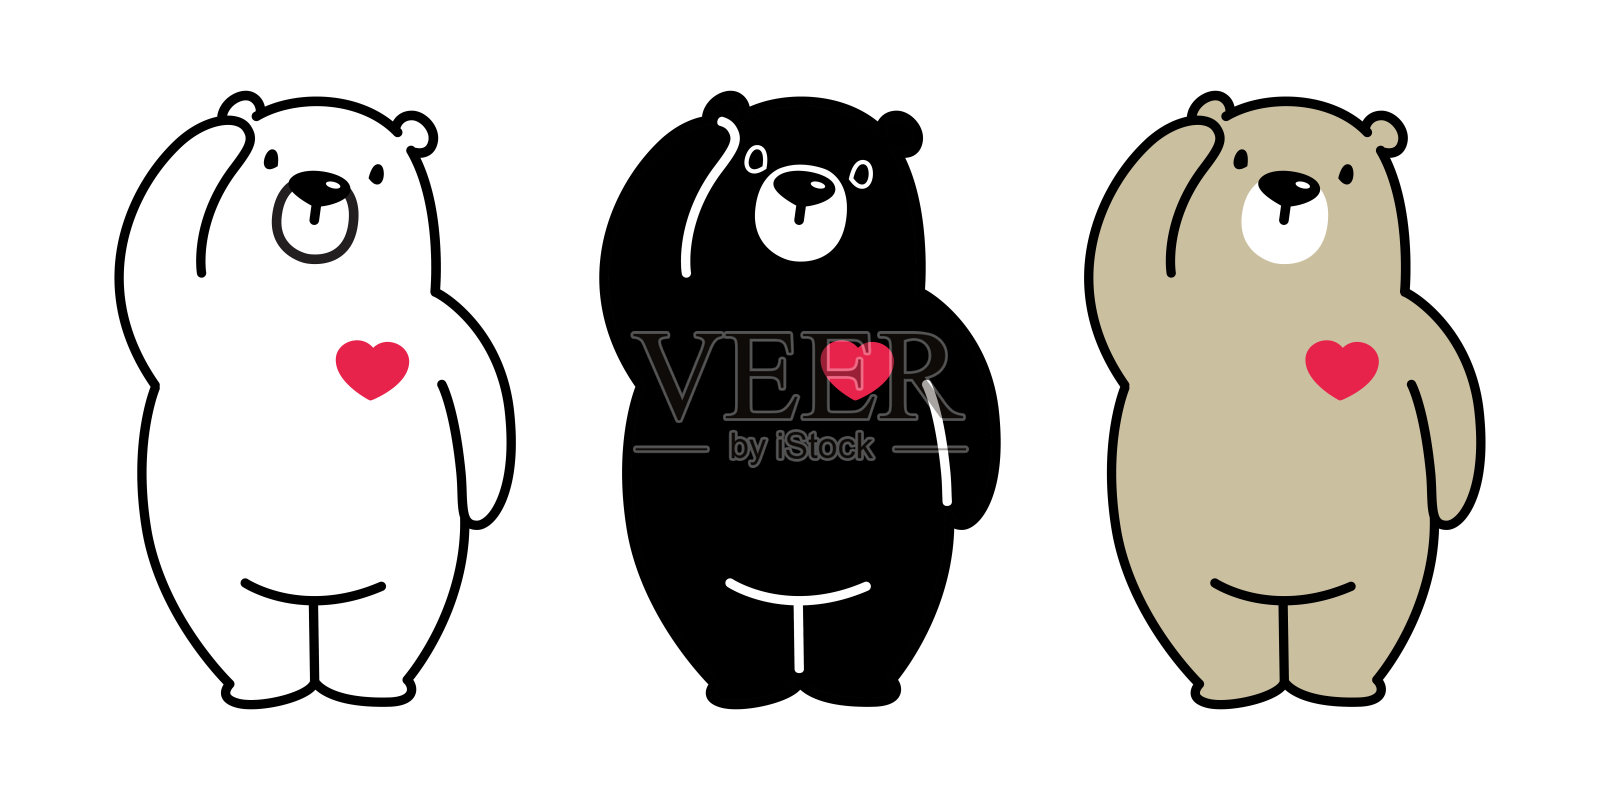 熊向量北极熊熊猫插图心爱情人人物卡通图标标志设计元素图片